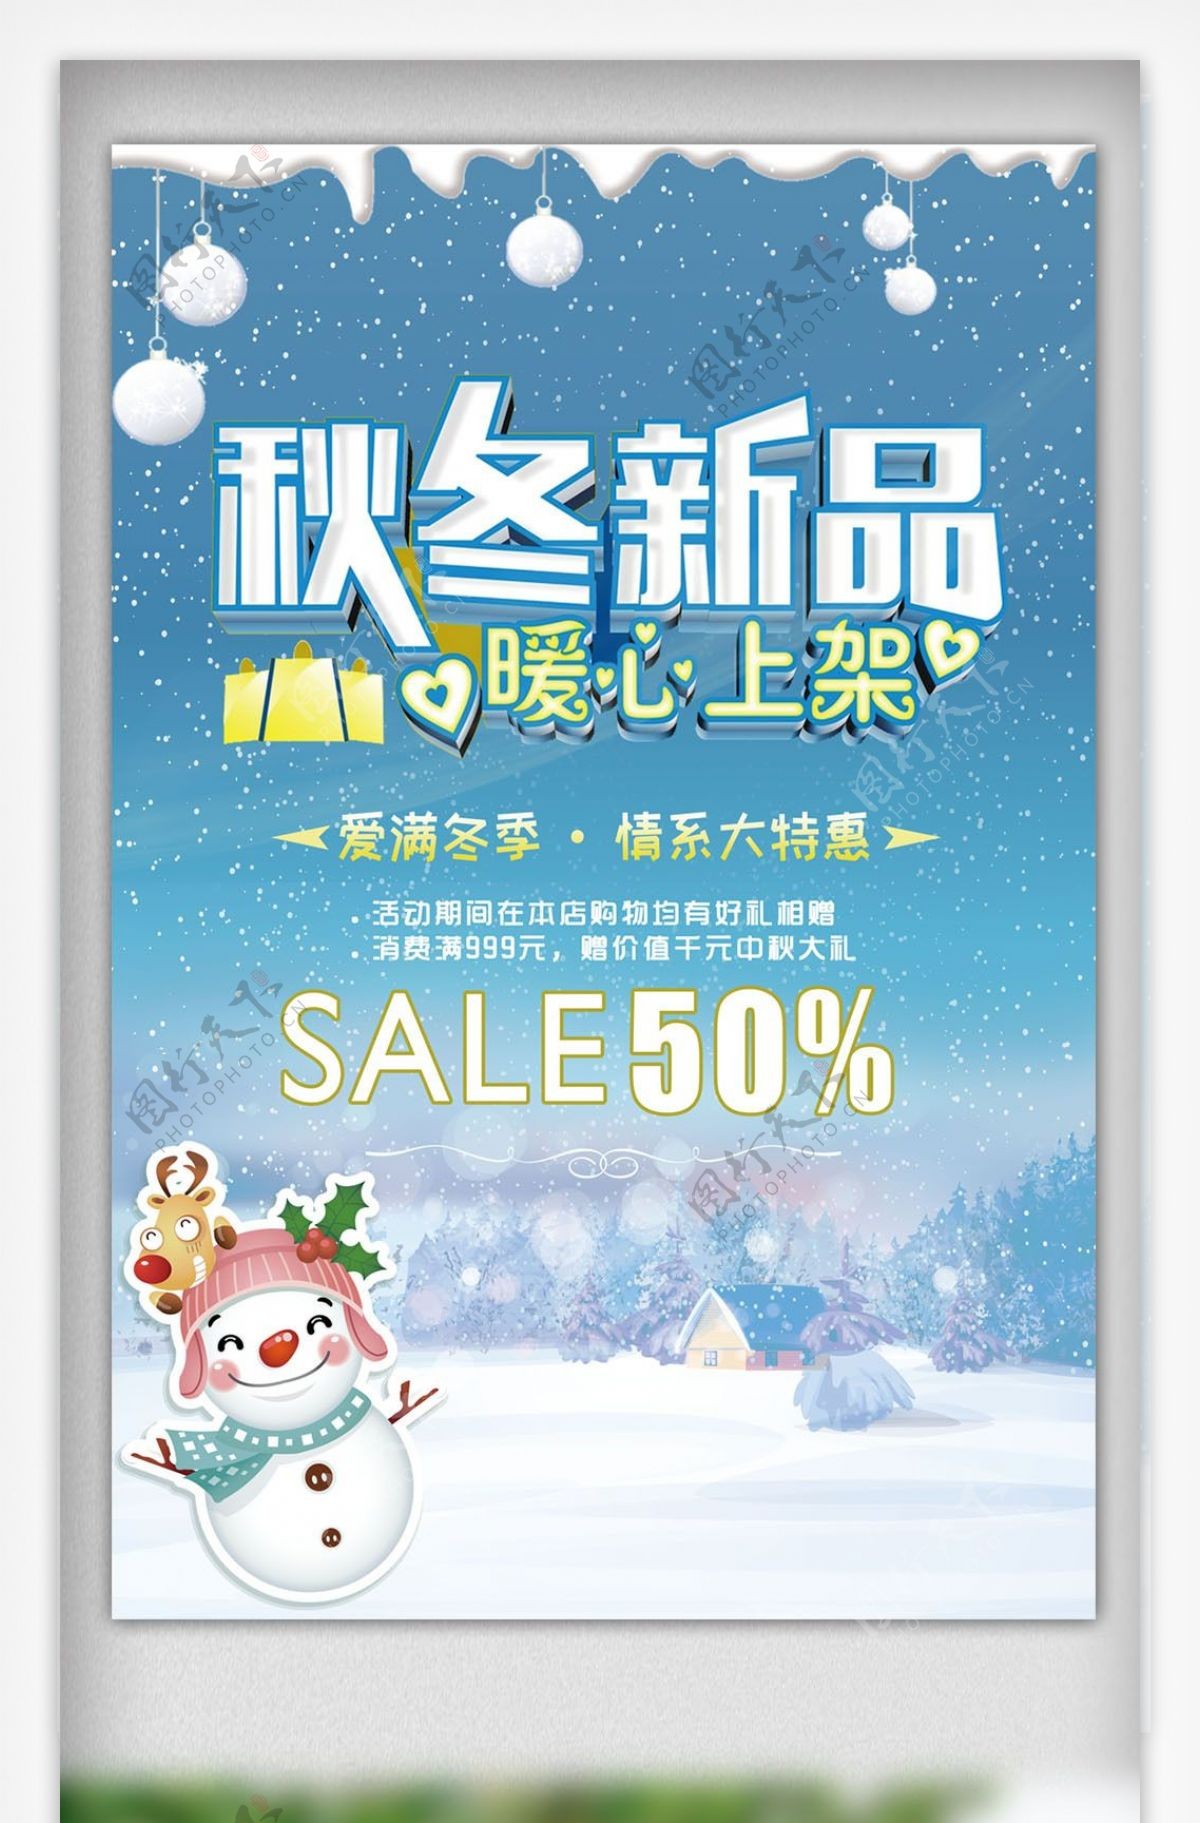 清新节日雪地促销礼物圣诞老人圣诞节